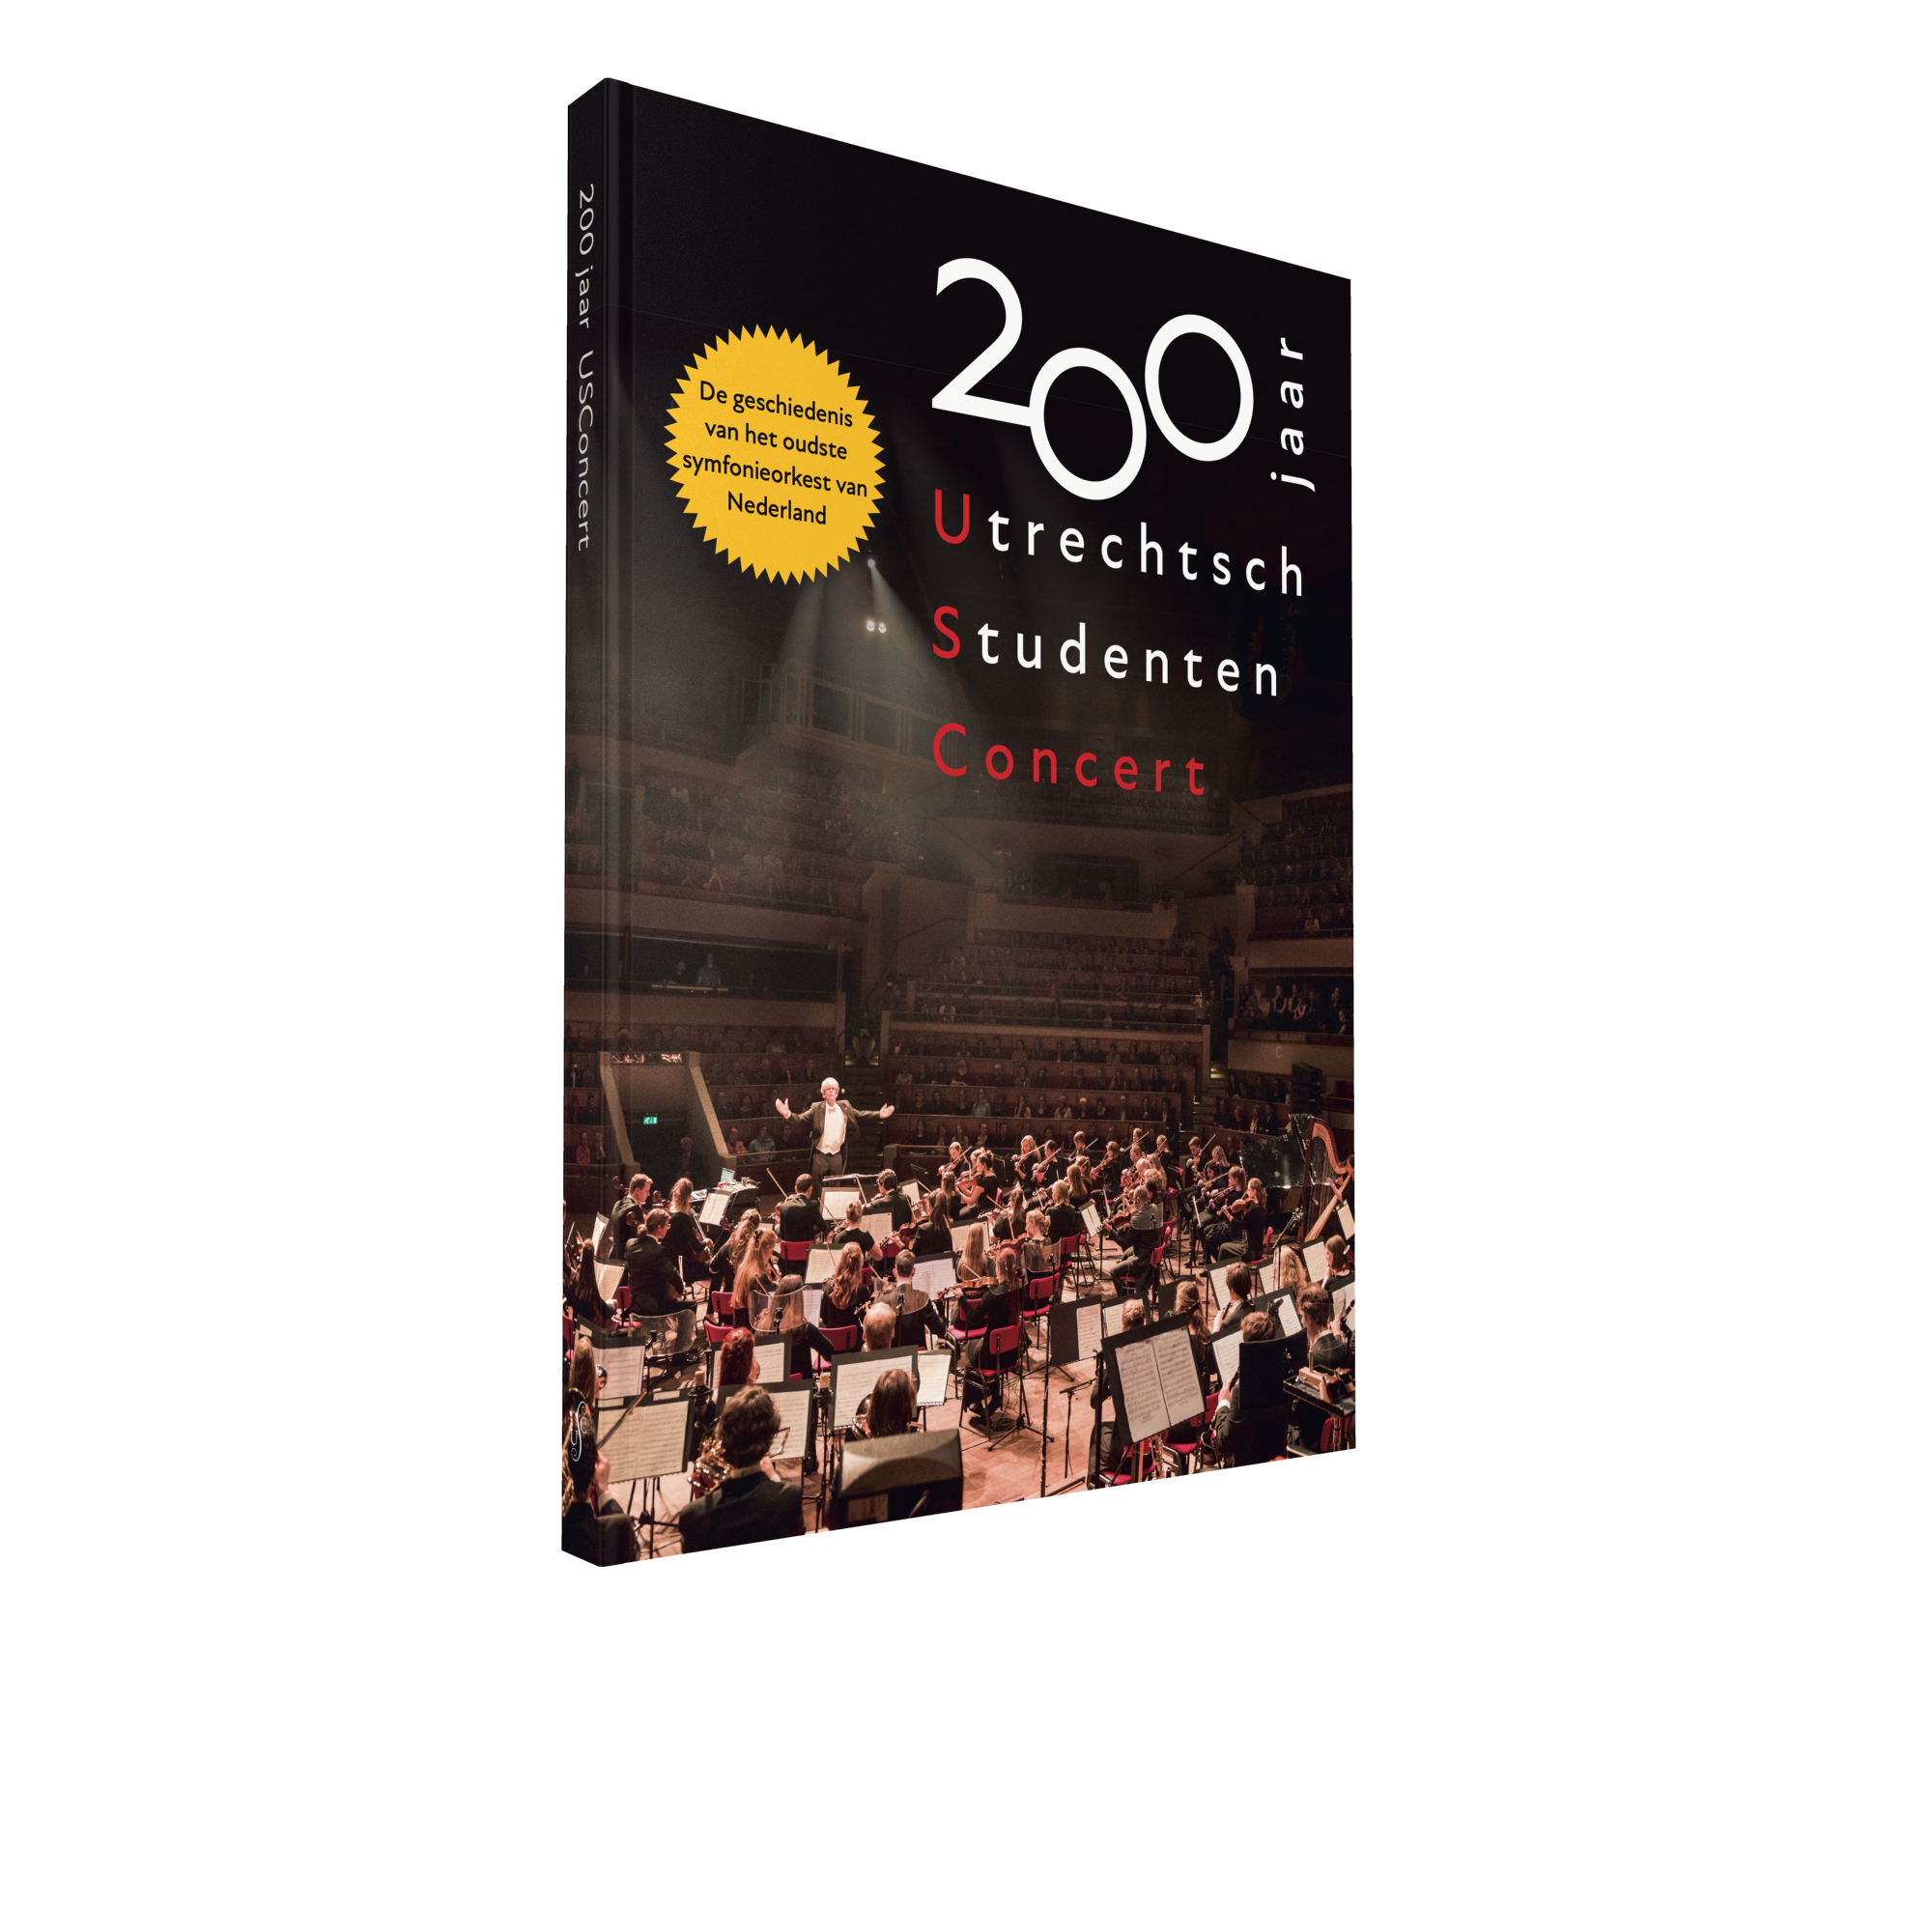 200 jaar Utrechtsch Studenten Concert
De geschiedenis van het oudste symfonieorkest van Nederland